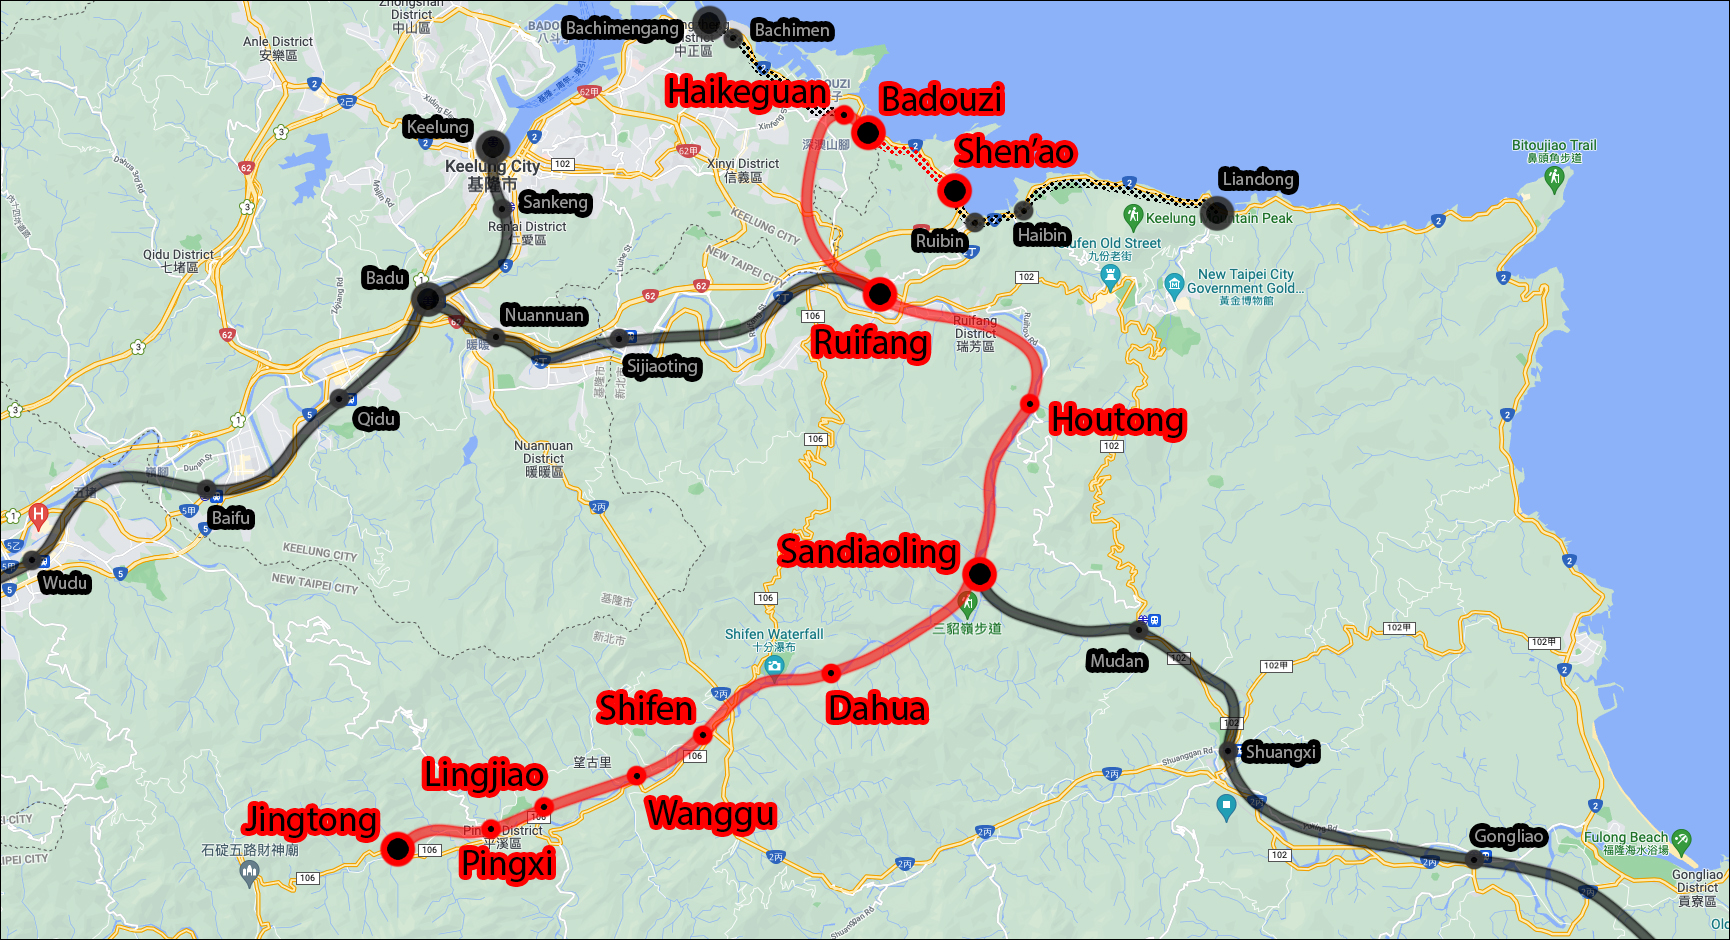 A Pingxi, a Shen'ao és az 1989-ig üzemelő Jinguashi vonal vonaltérképe. A Shen'ao vonal a vörössel jelölt nyomvonal Ruifang - Shen'ao szakaszát képezi,noha a Badouzi – Shen’ao szakaszon már megszűnt a vasúti forgalom. A Pingxi vonal valamivel délebbre, Sandiaoling és Jingtong között húzódik. A napjainkban Jingtong és Shen’ao között közlekedő dízel motorvonatok így Sandiaoling és Ruifang között a villamosított fővonalat is használják.